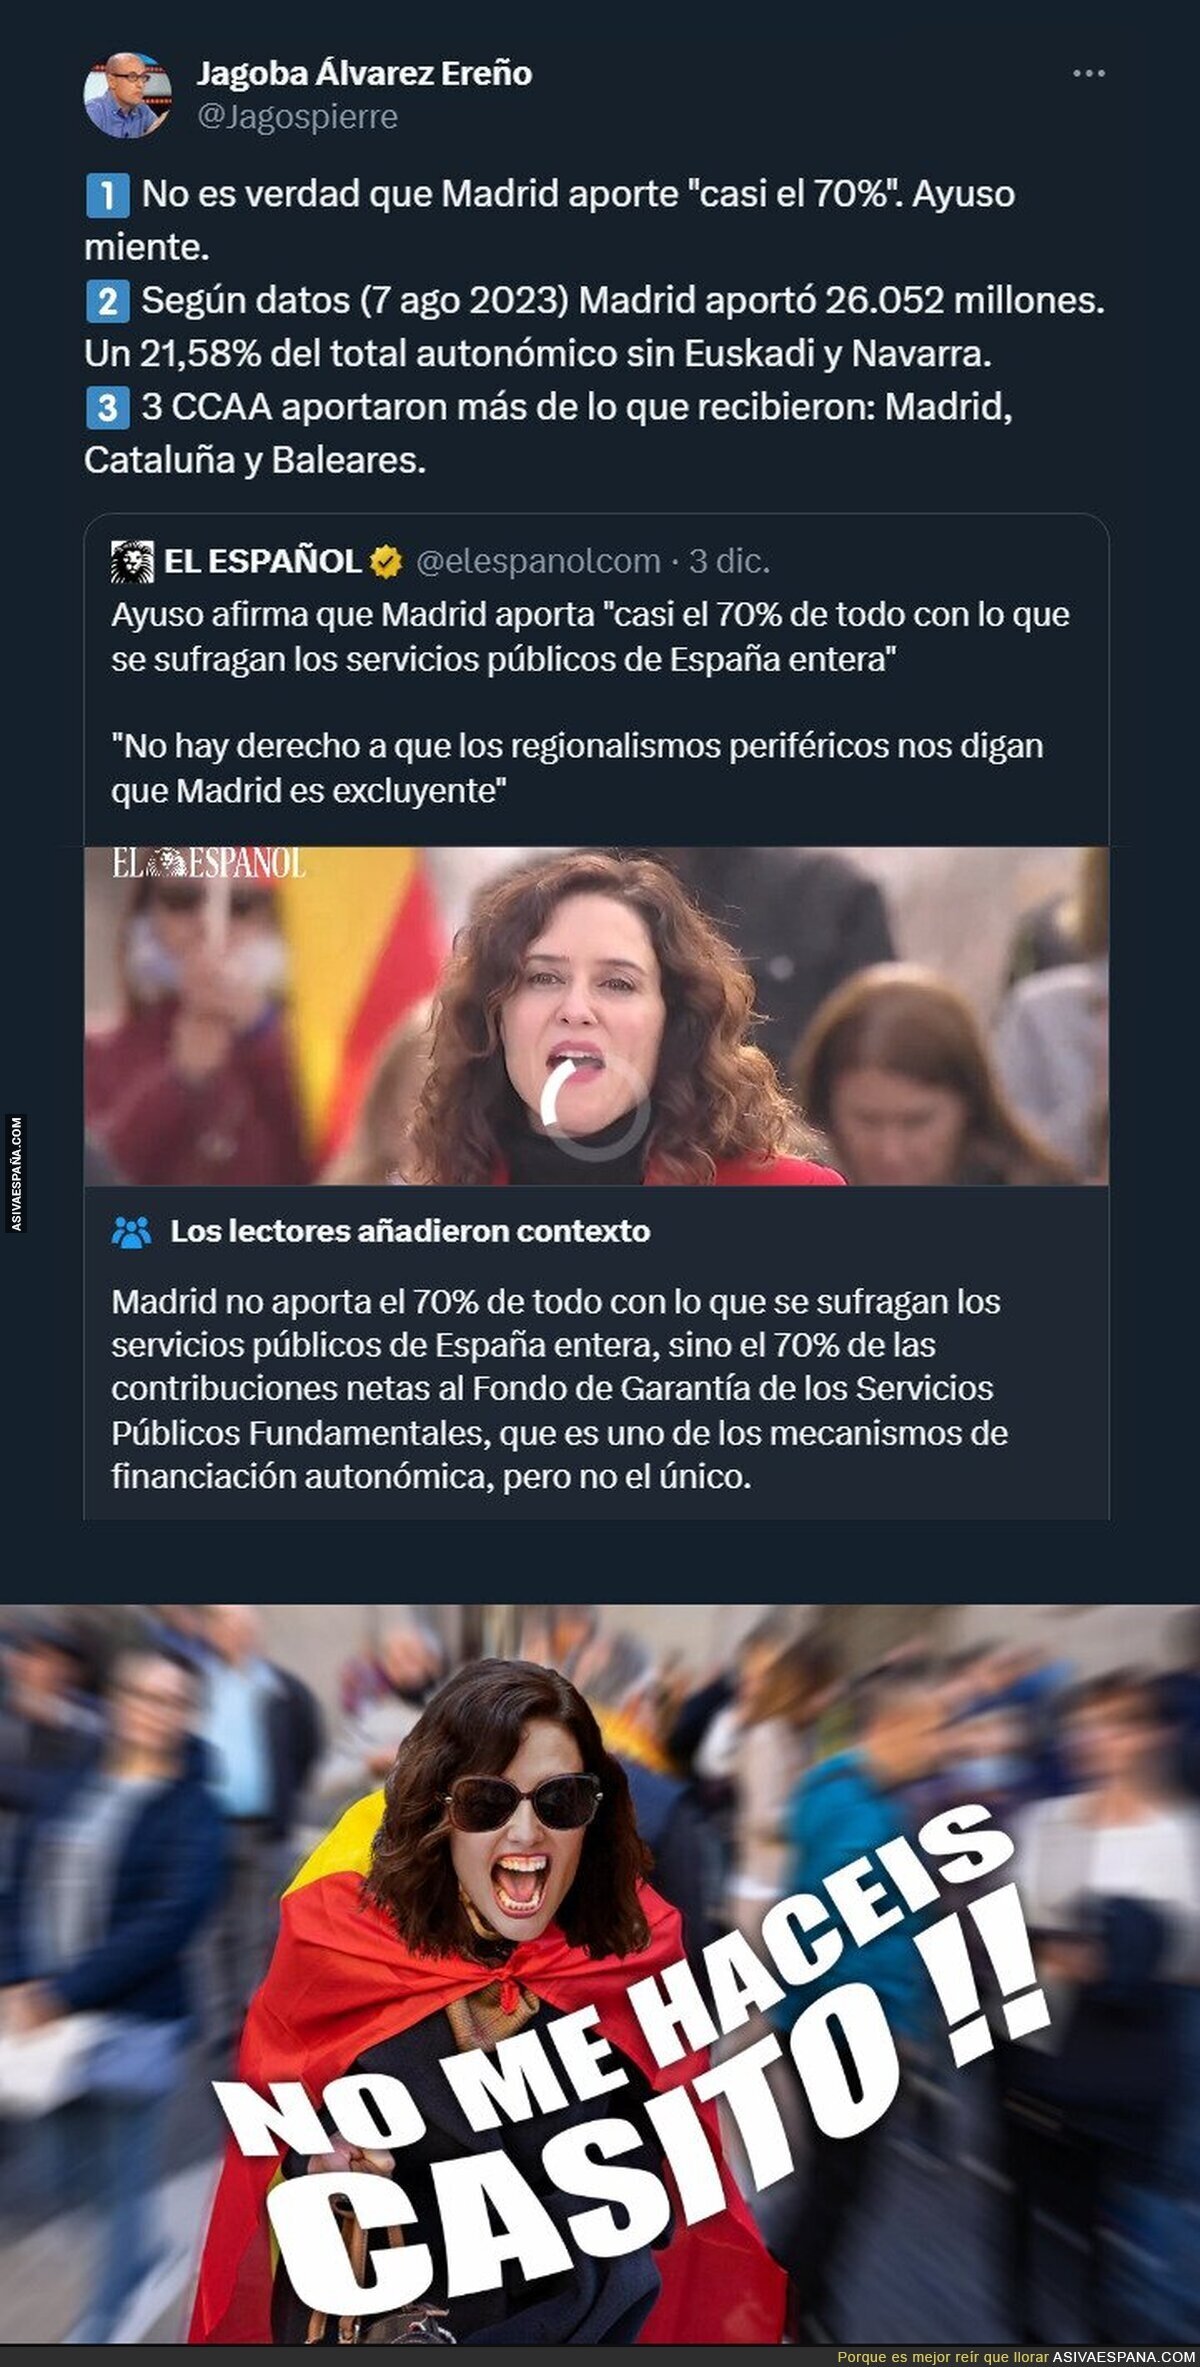 No le digáis la verdad que se enfada y pide la independencia de Madrid